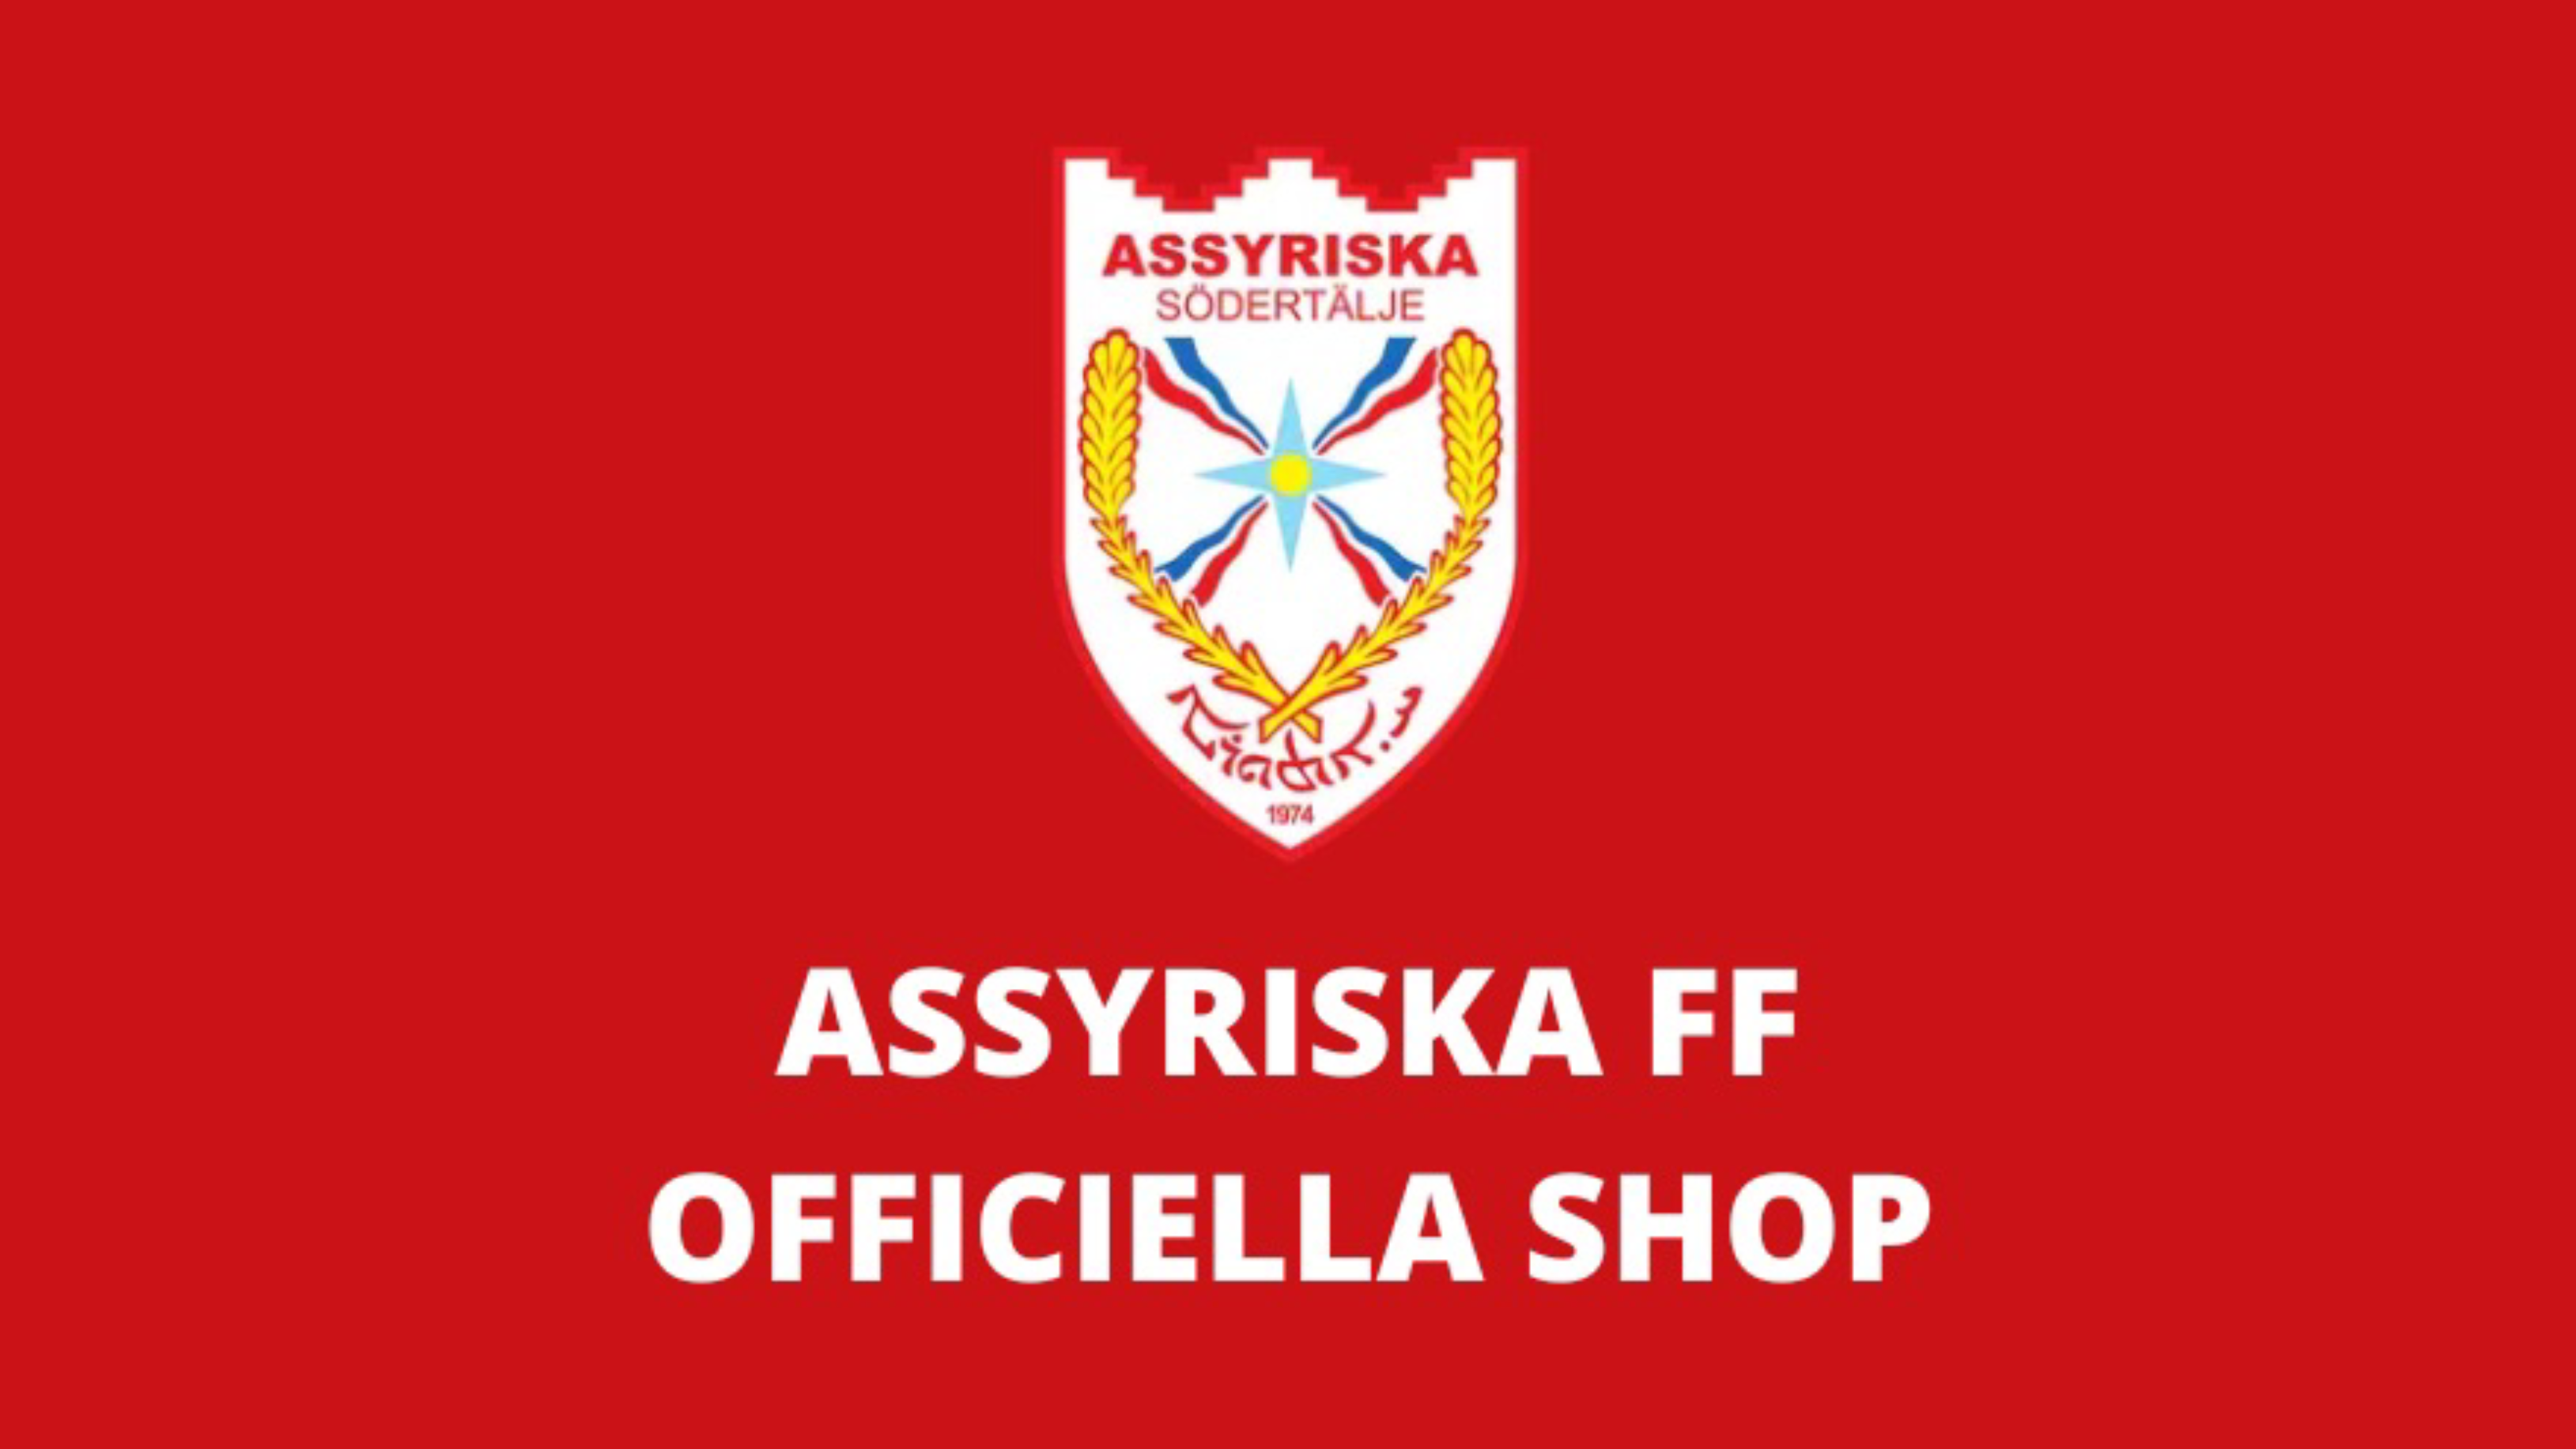 Assyriska lanserar en web shop med en tillfällig klädkollektion. [Foto: Redaktionen].